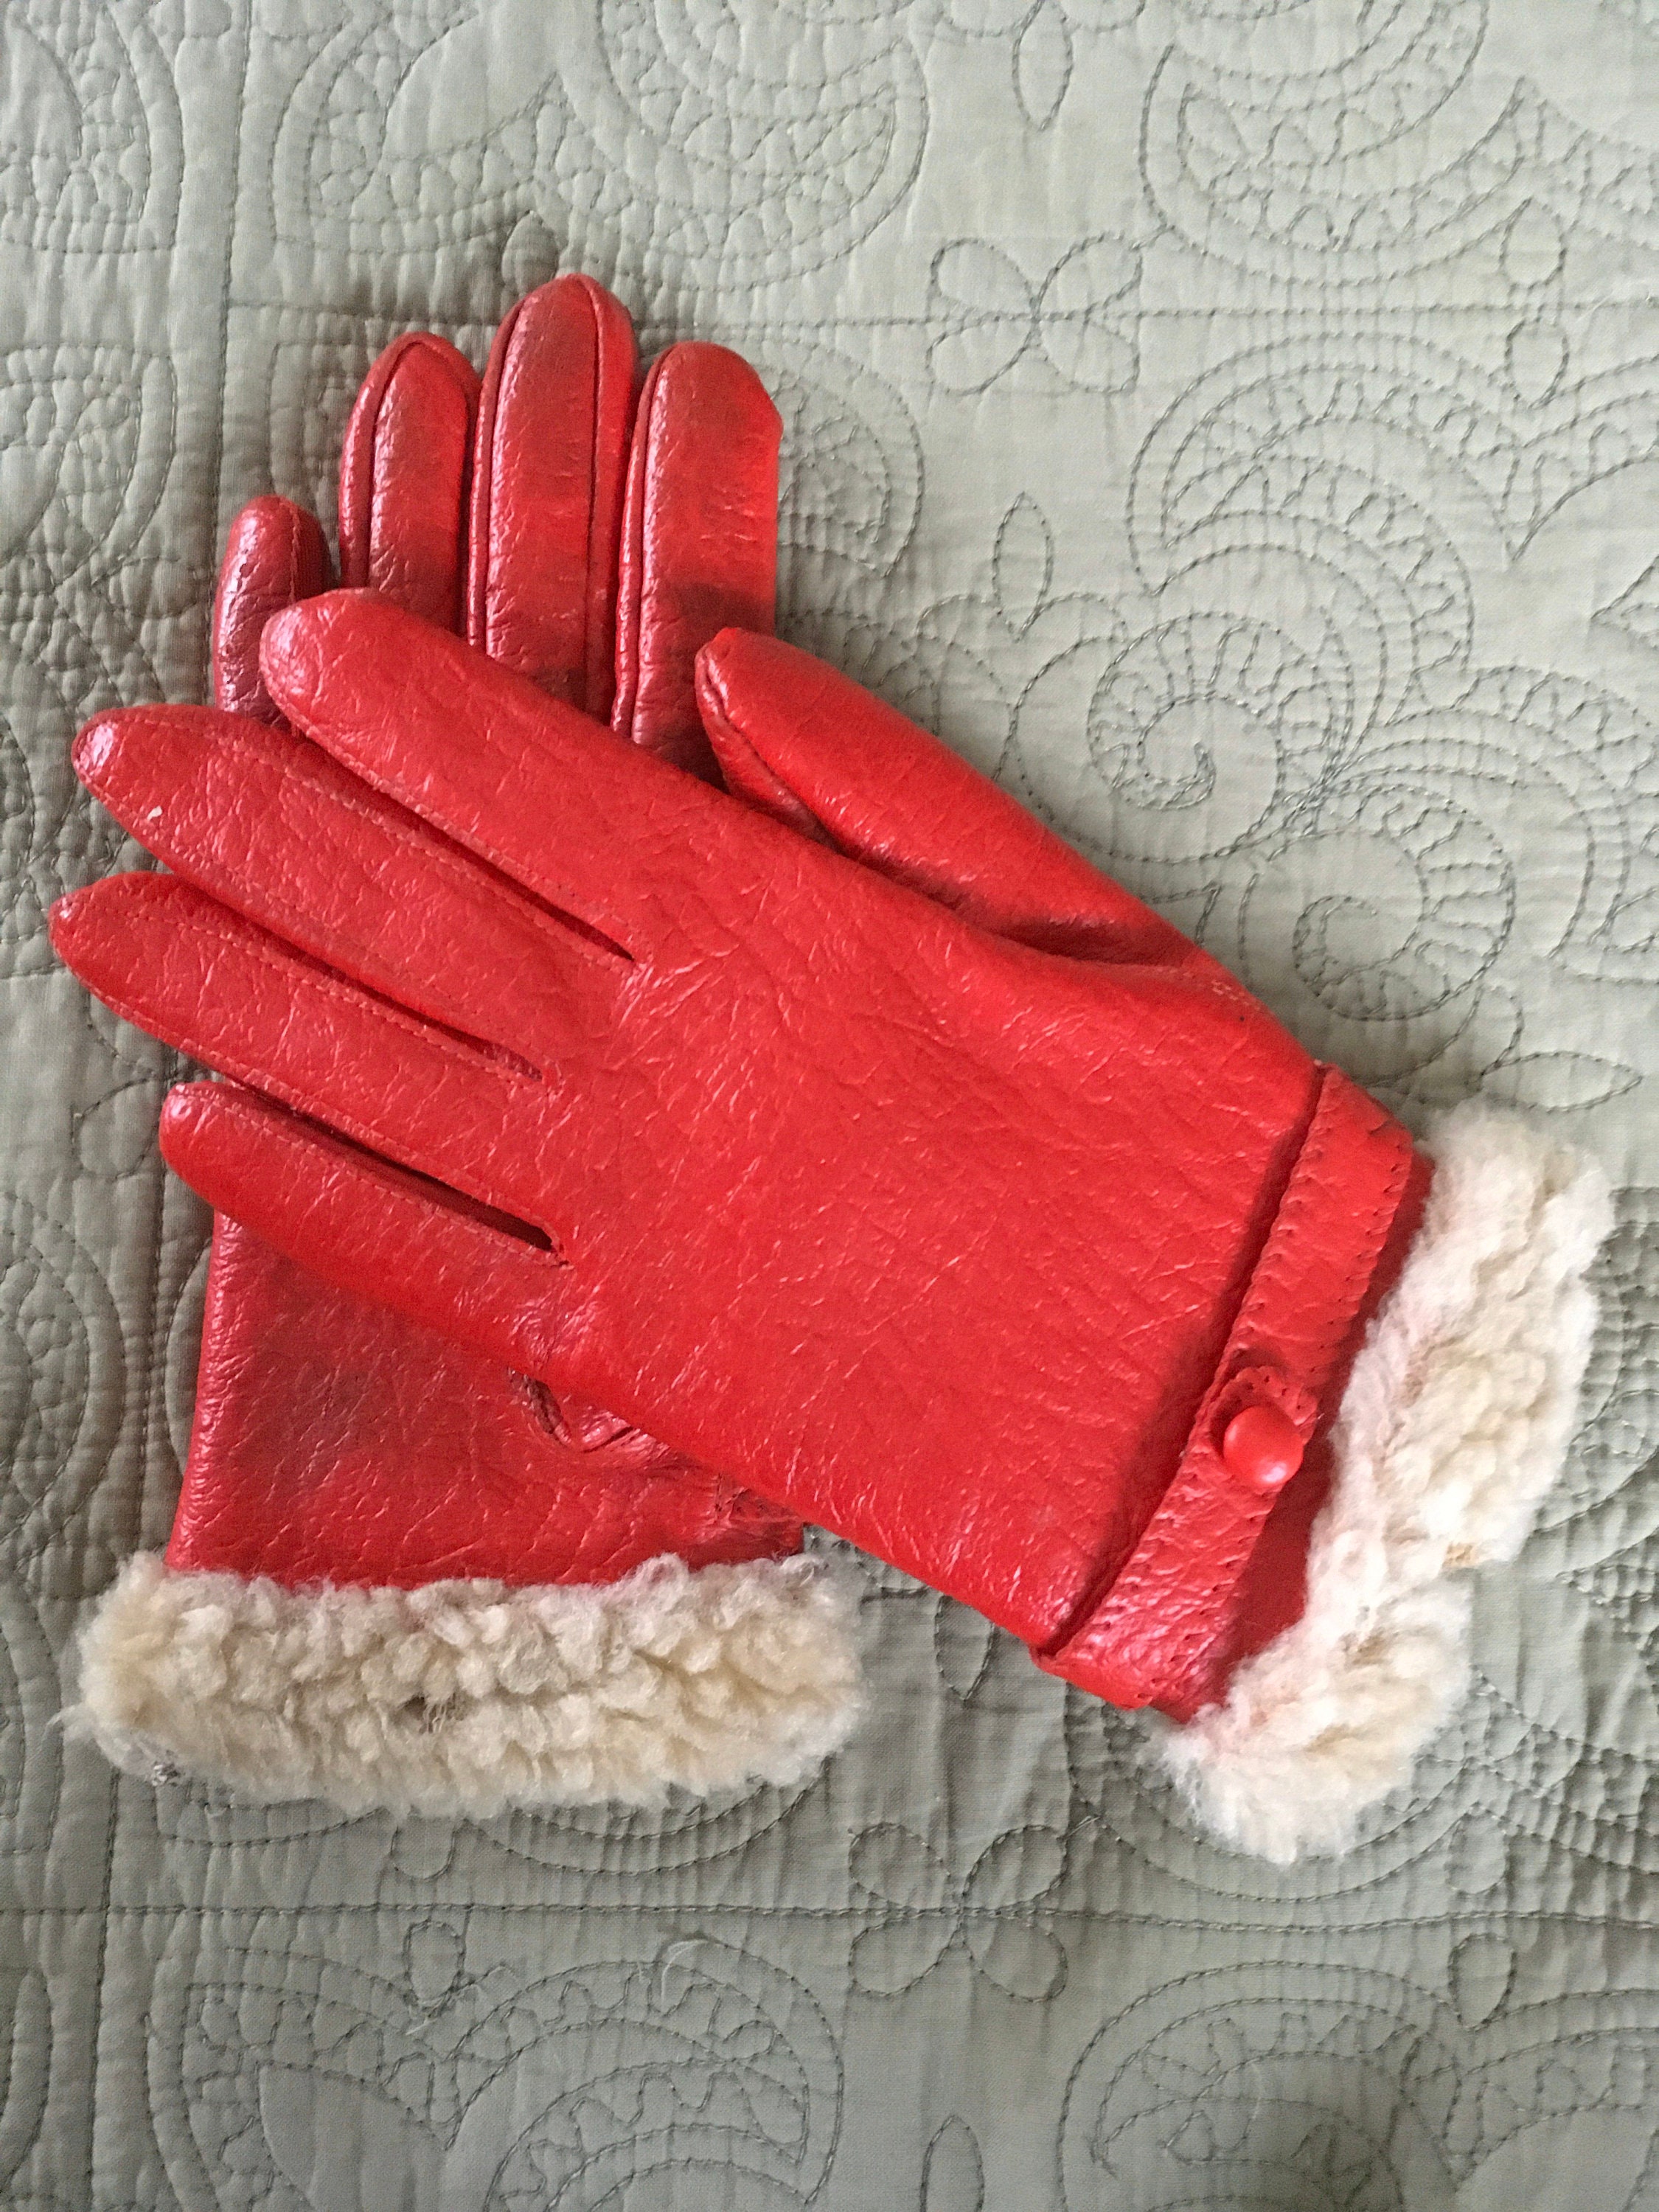 Vintage Red Gloves Red Gloves Vintage Accessory Prop | Etsy